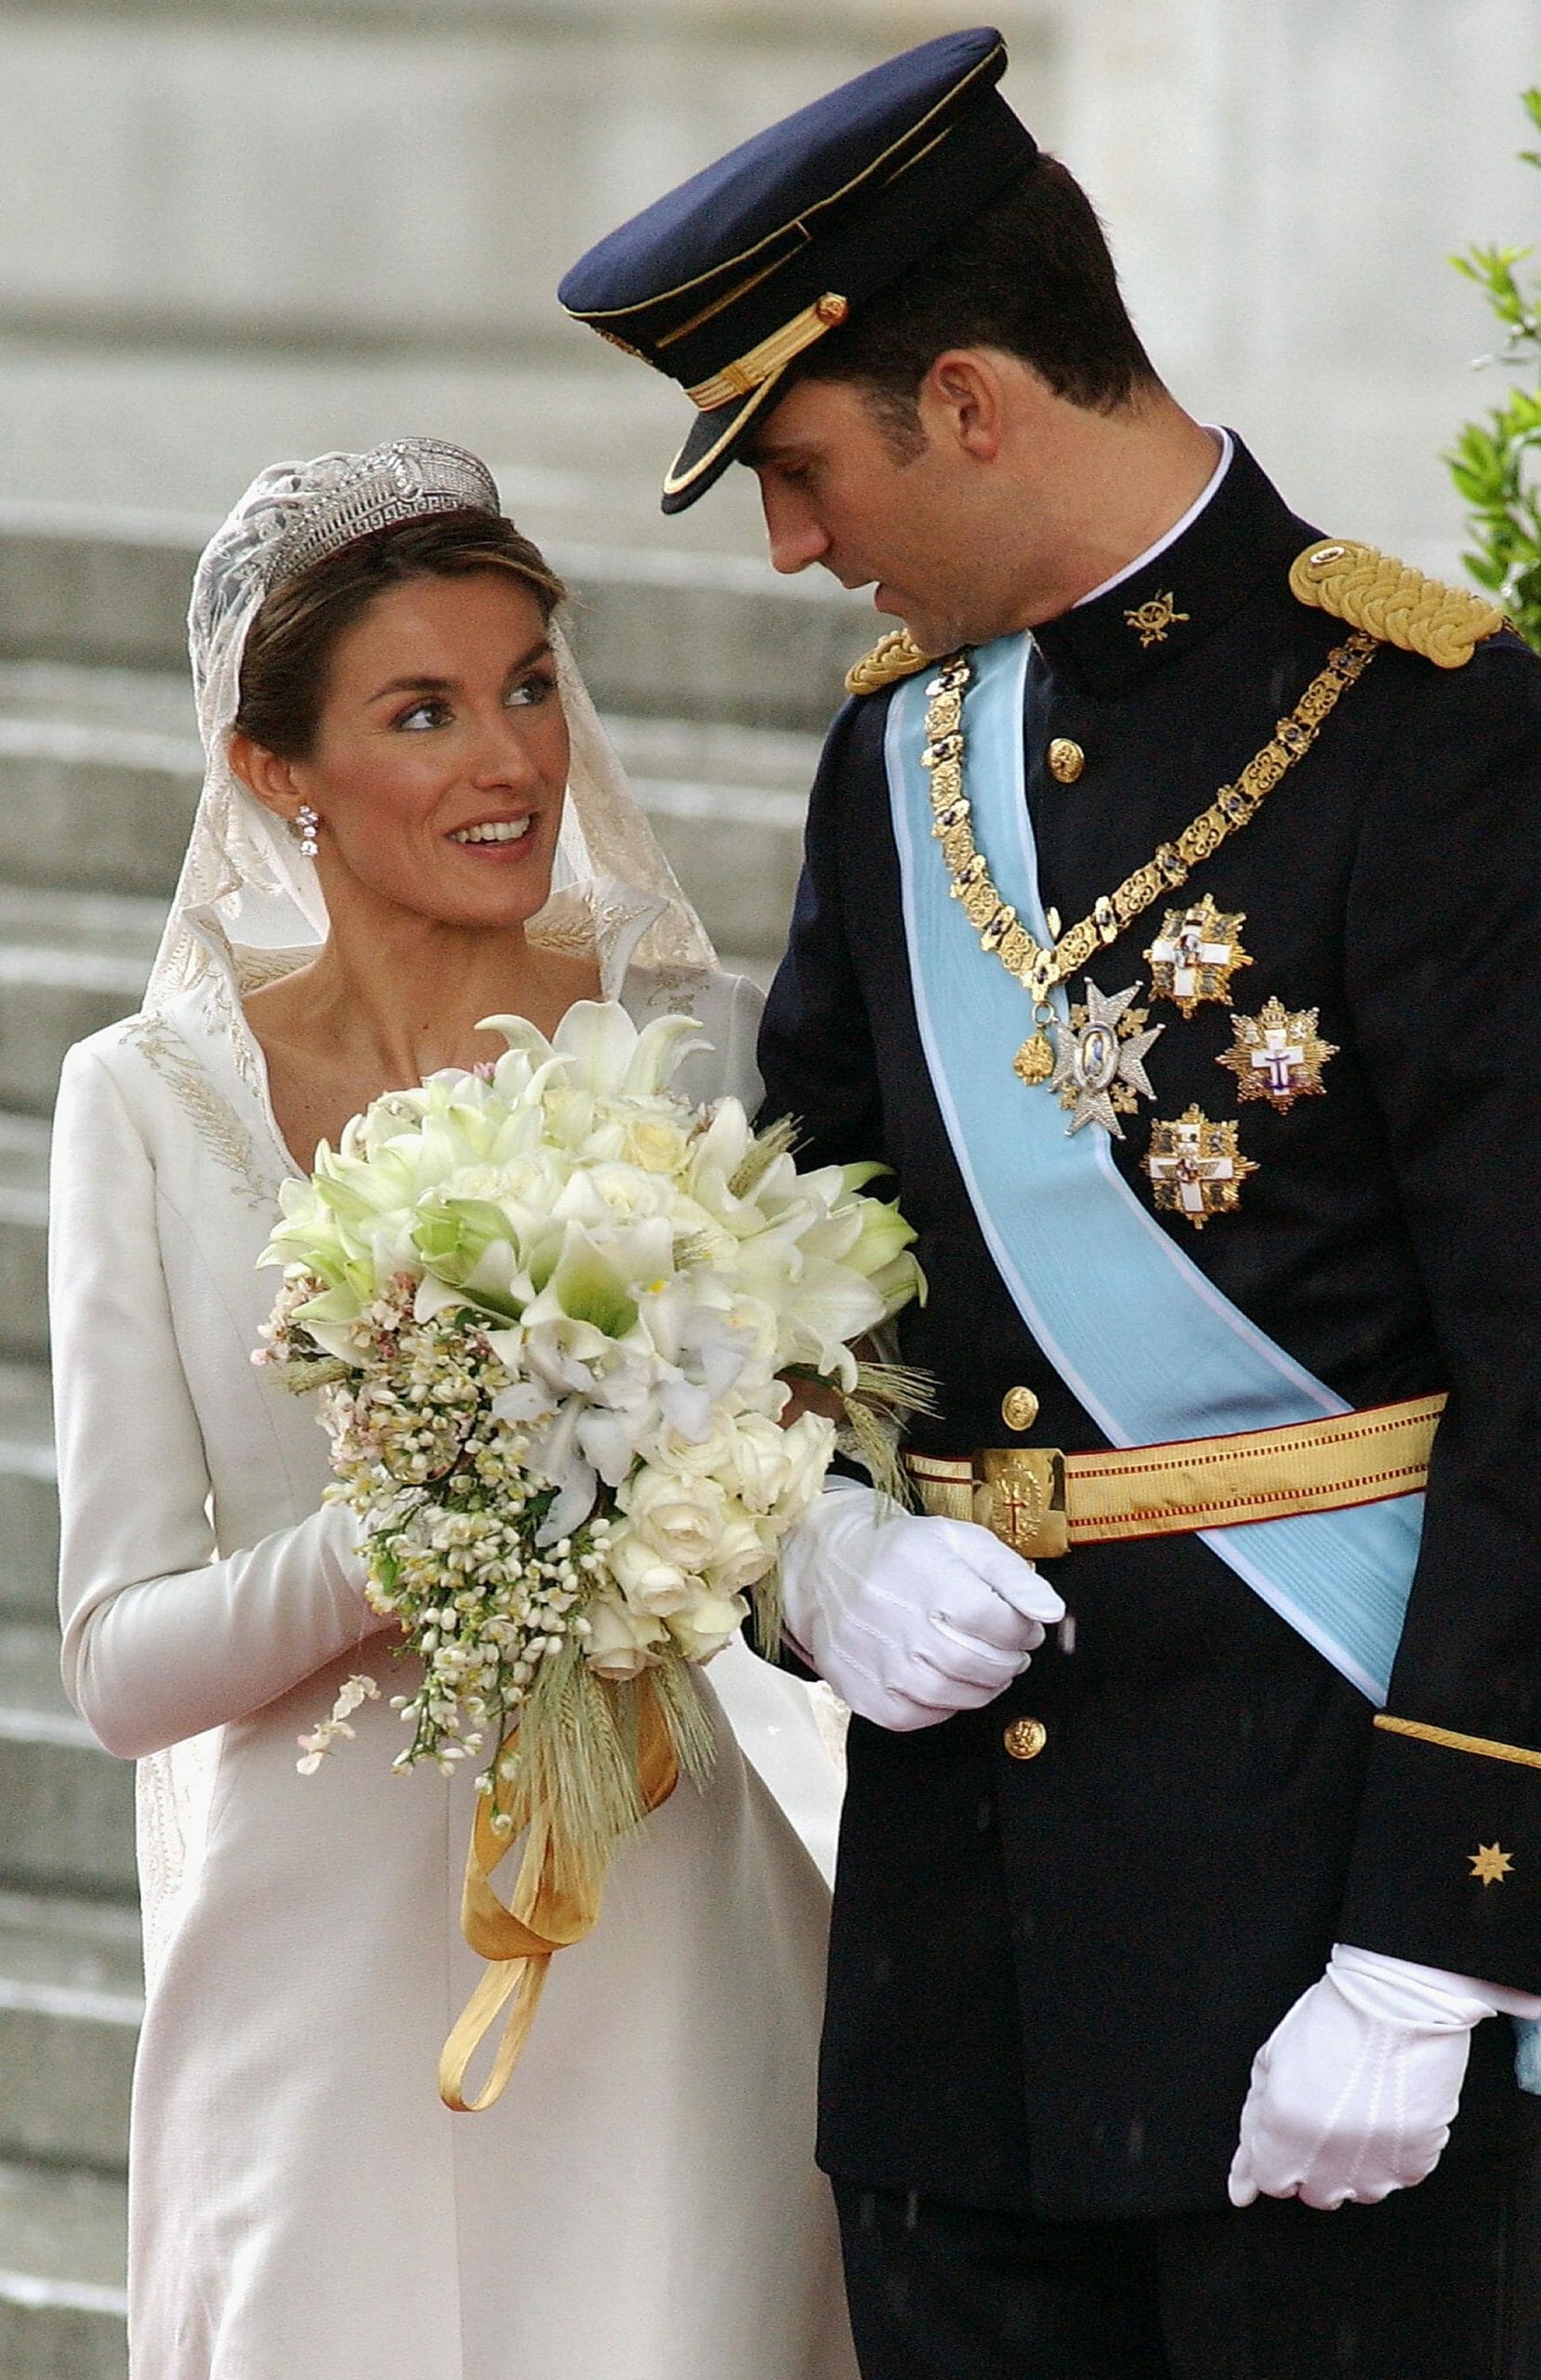 King Felipe, Queen Letizia